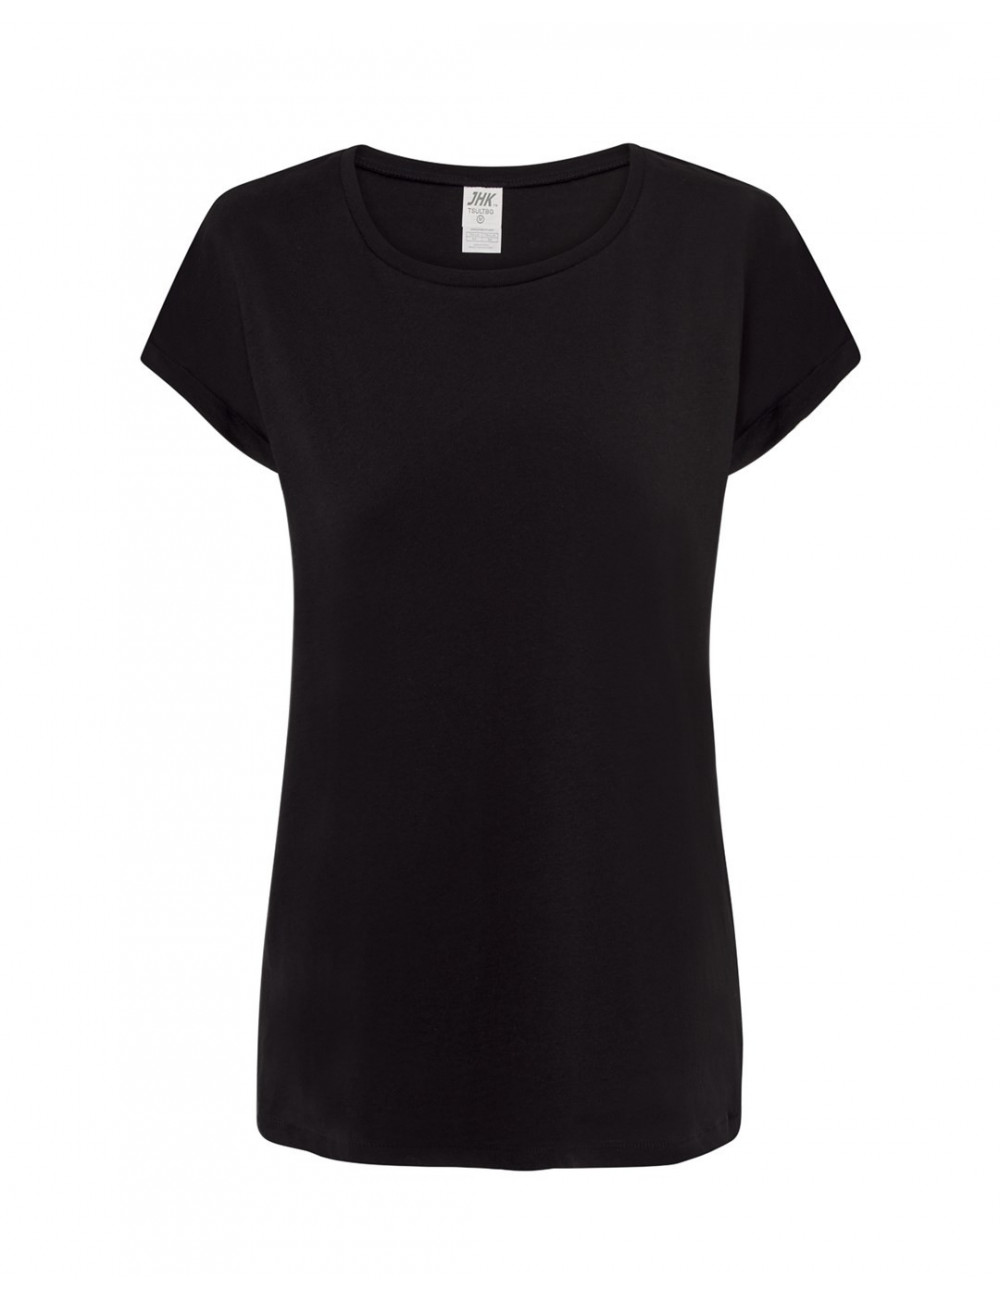 T-Shirt Tsul TBG Tobago für Damen, schwarz, Jhk